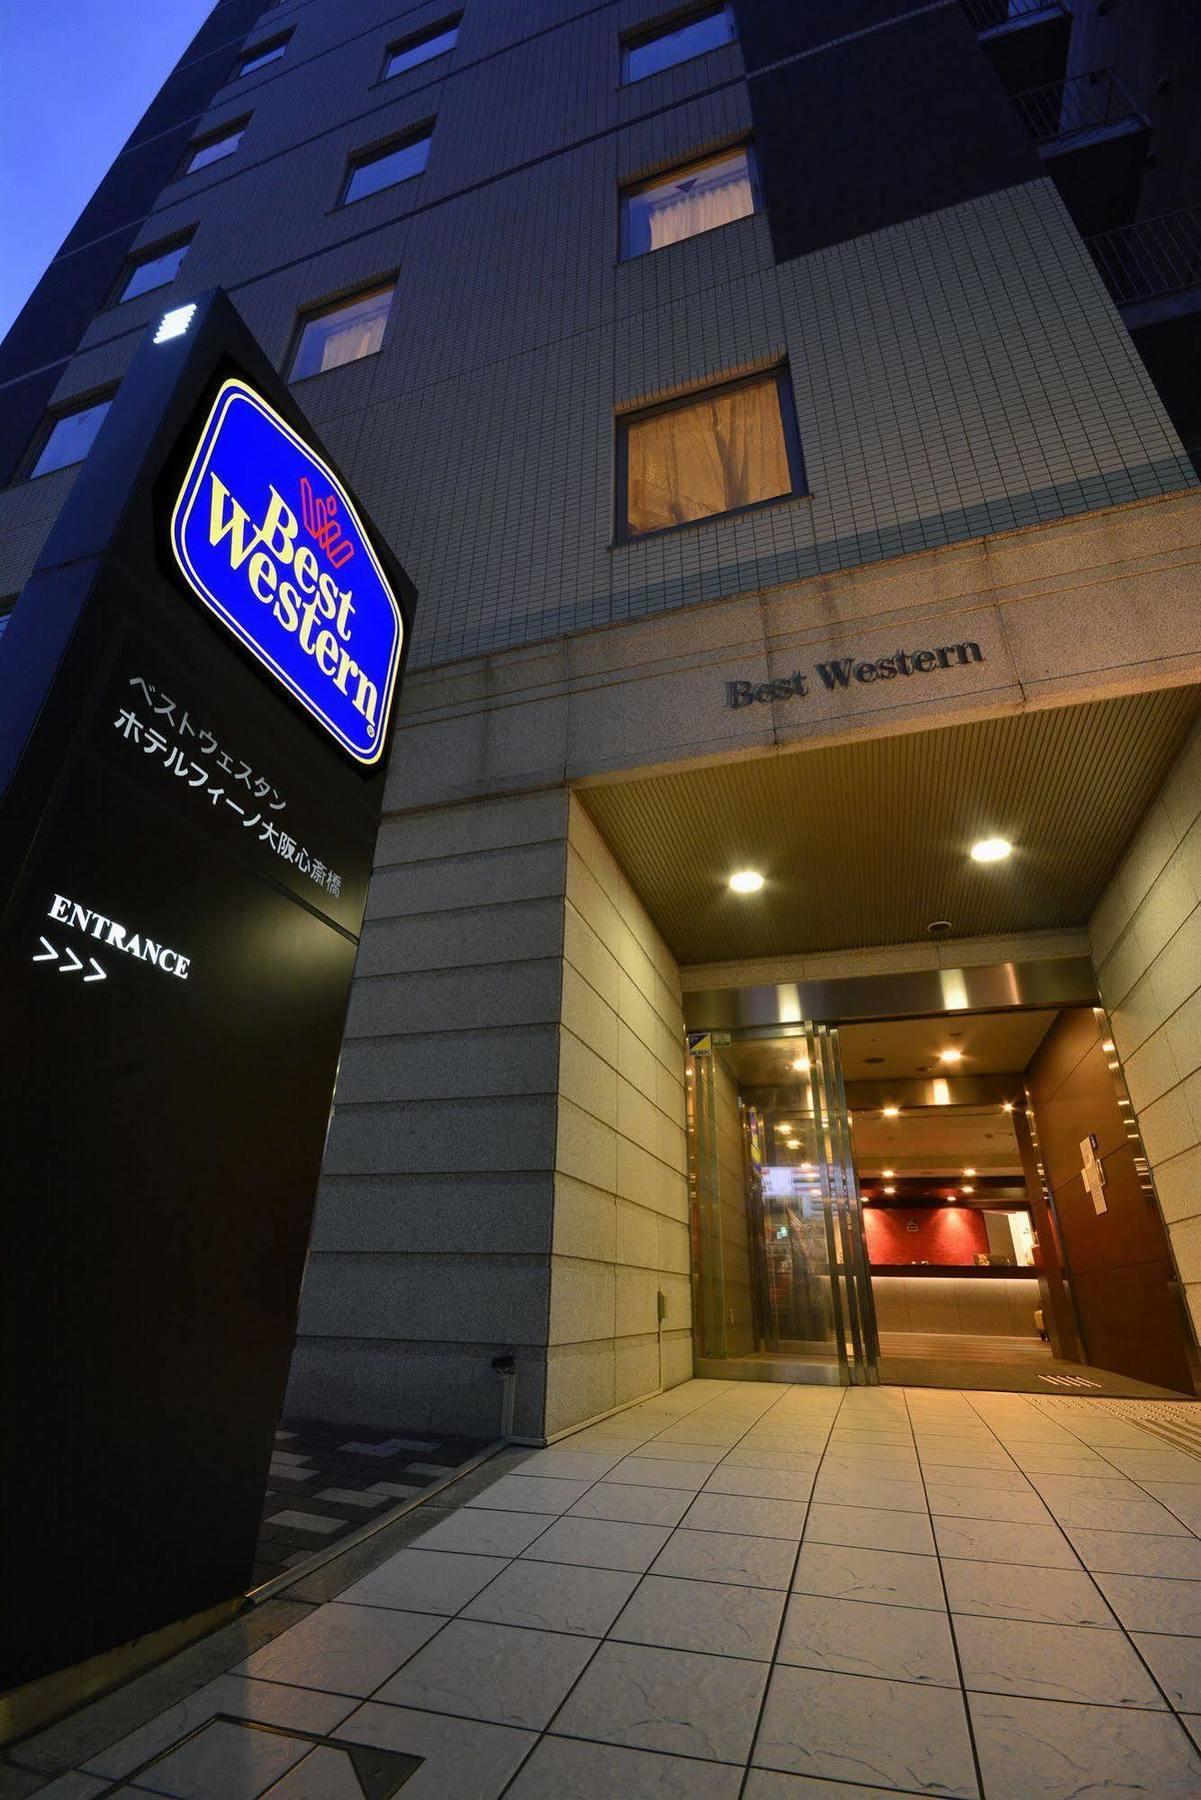 Best Western Hotel Fino Osaka Shinsaibashi Extérieur photo